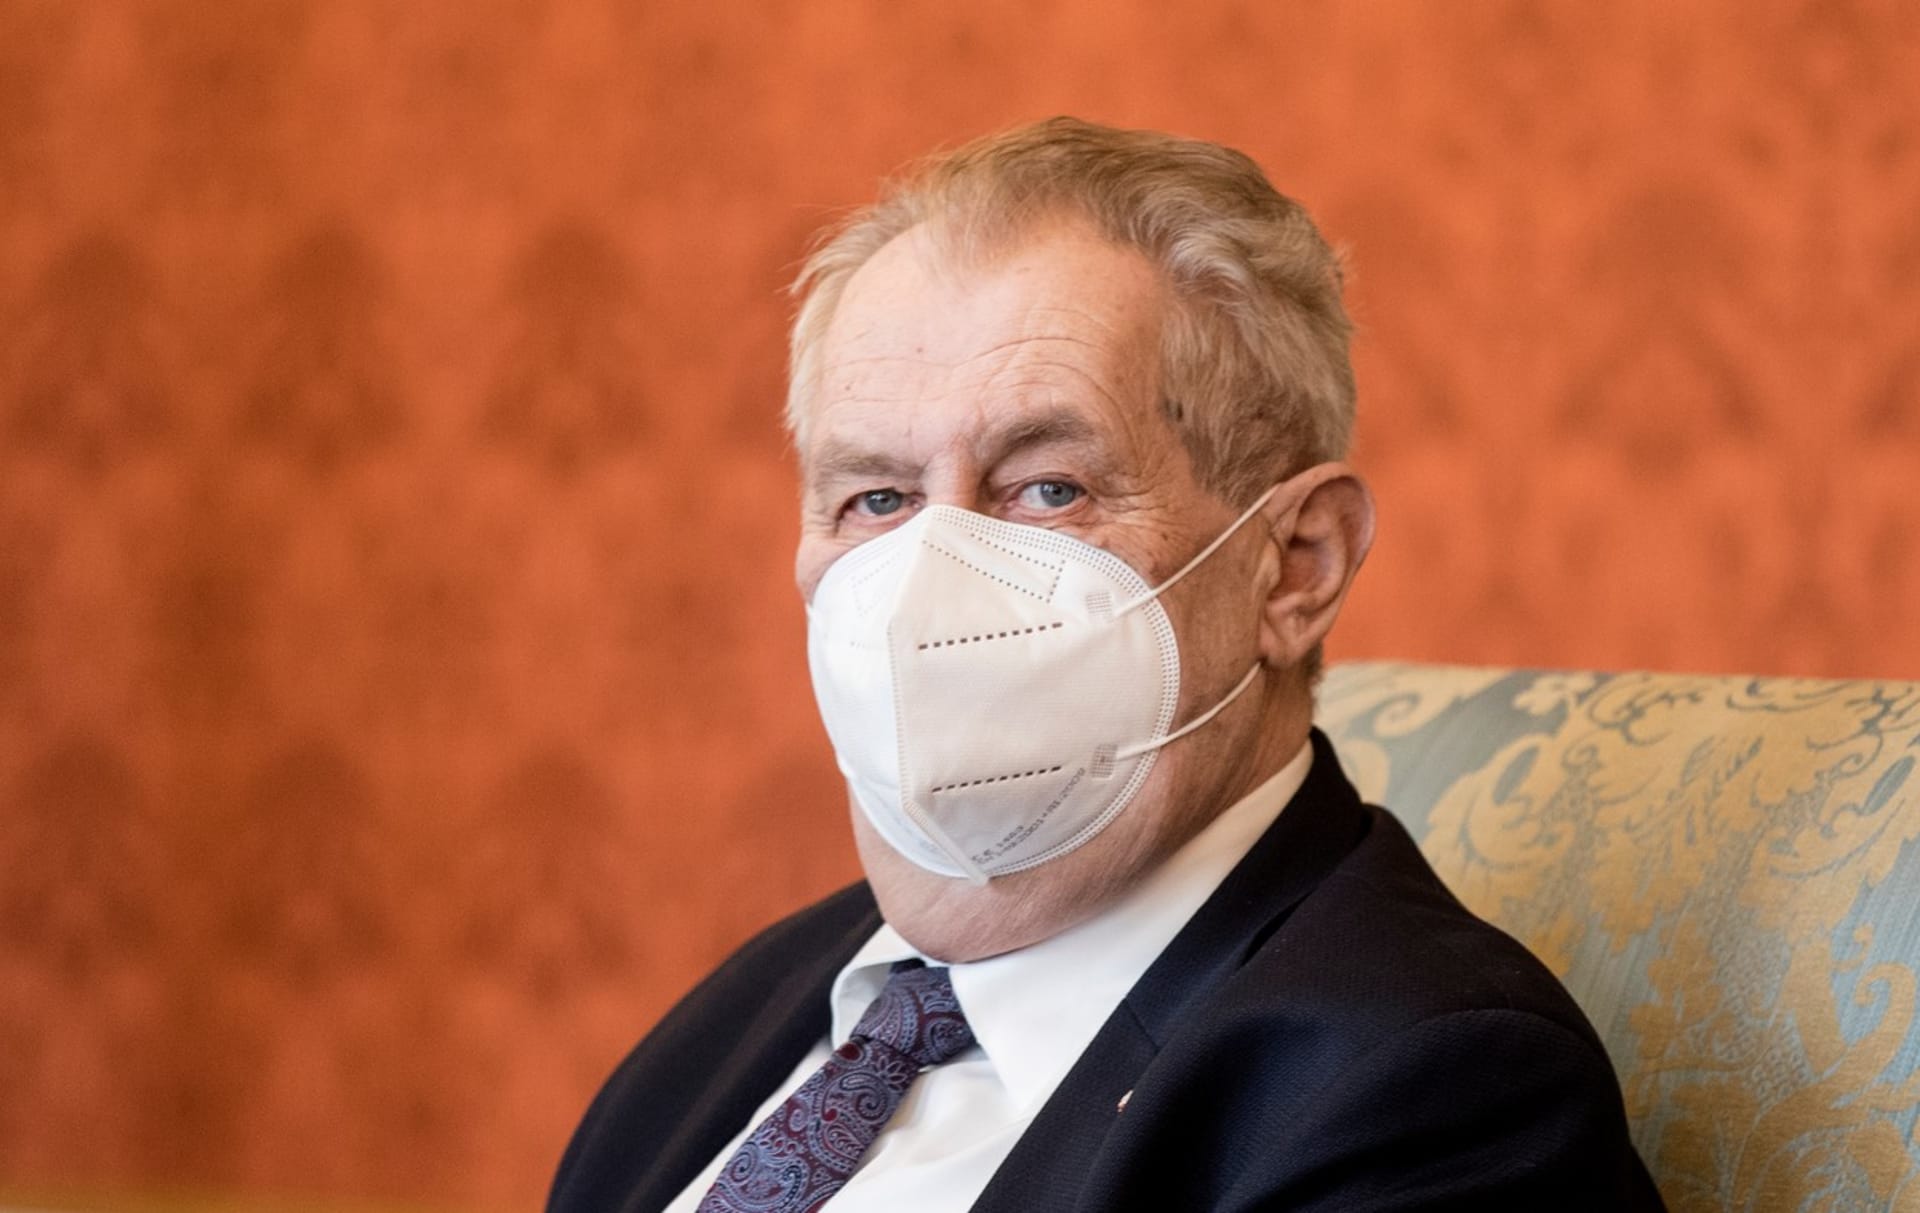 Prezident Miloš Zeman nebude vetovat novelu volebního zákona. Pokud ji schválí Parlament, tak ji podepíše. (Ilustrační foto)